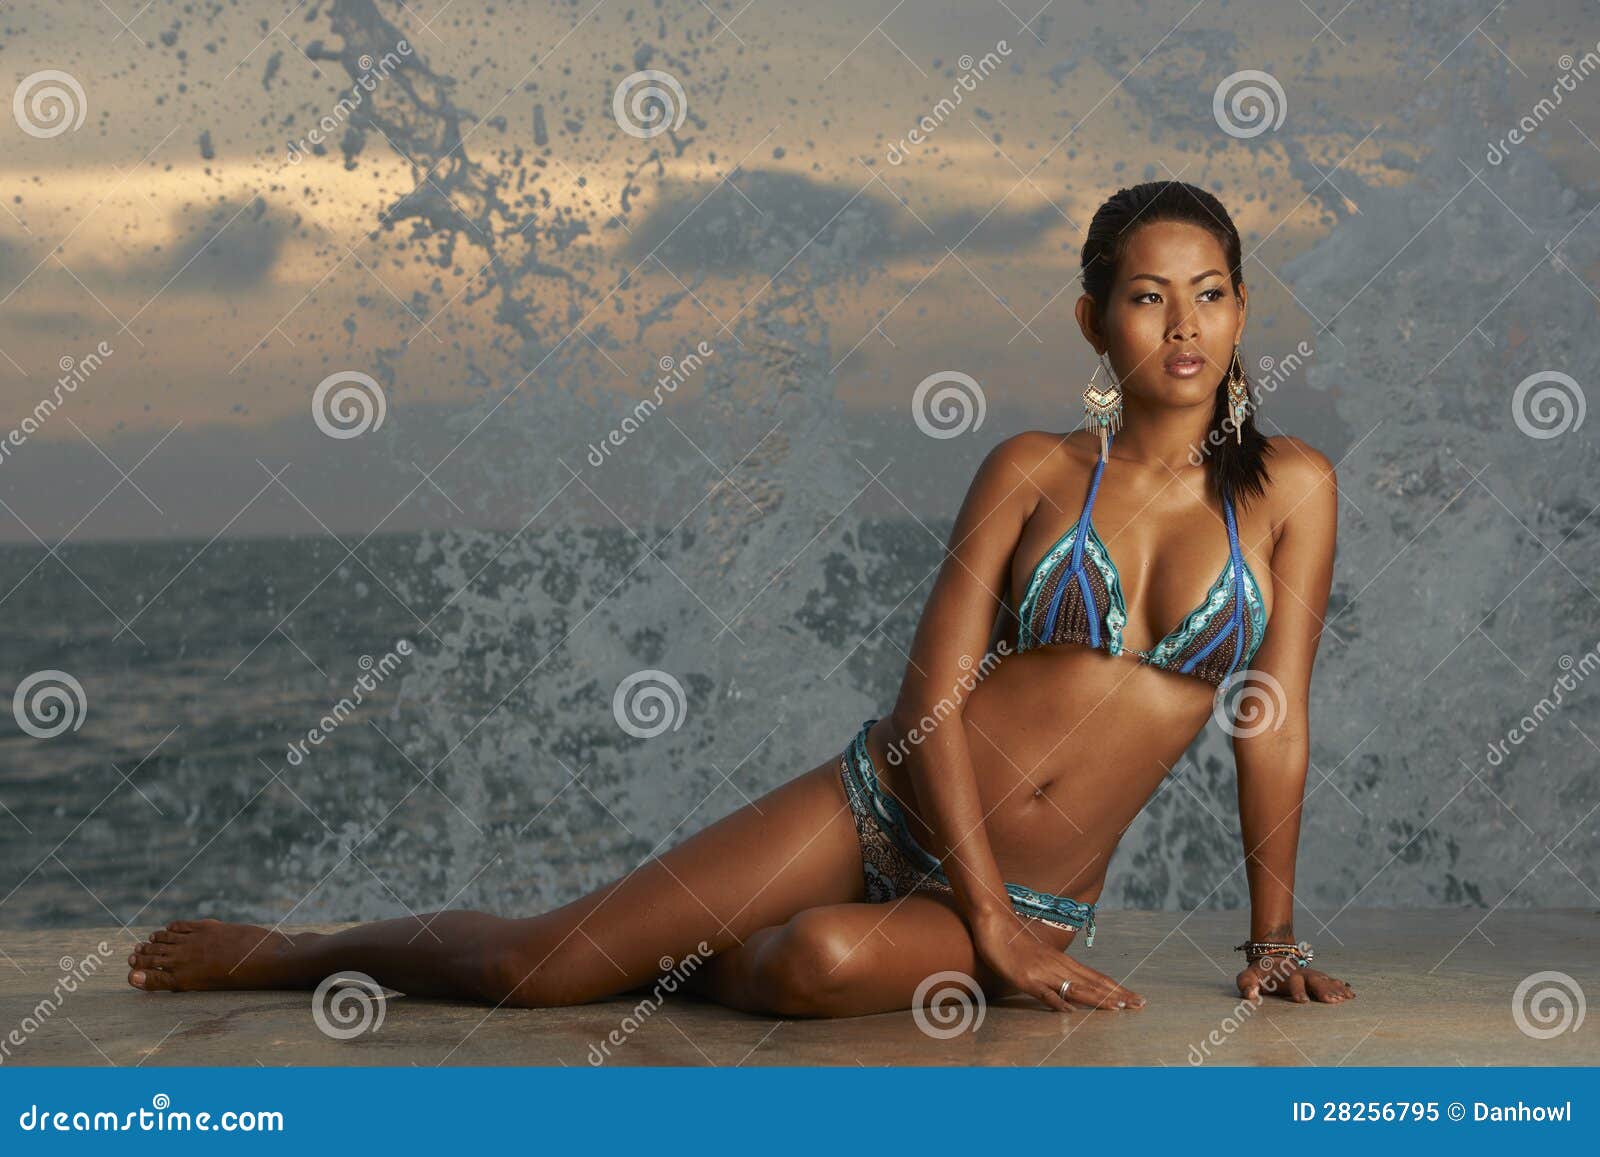 112 Asian Behind Bikini Stock Photos